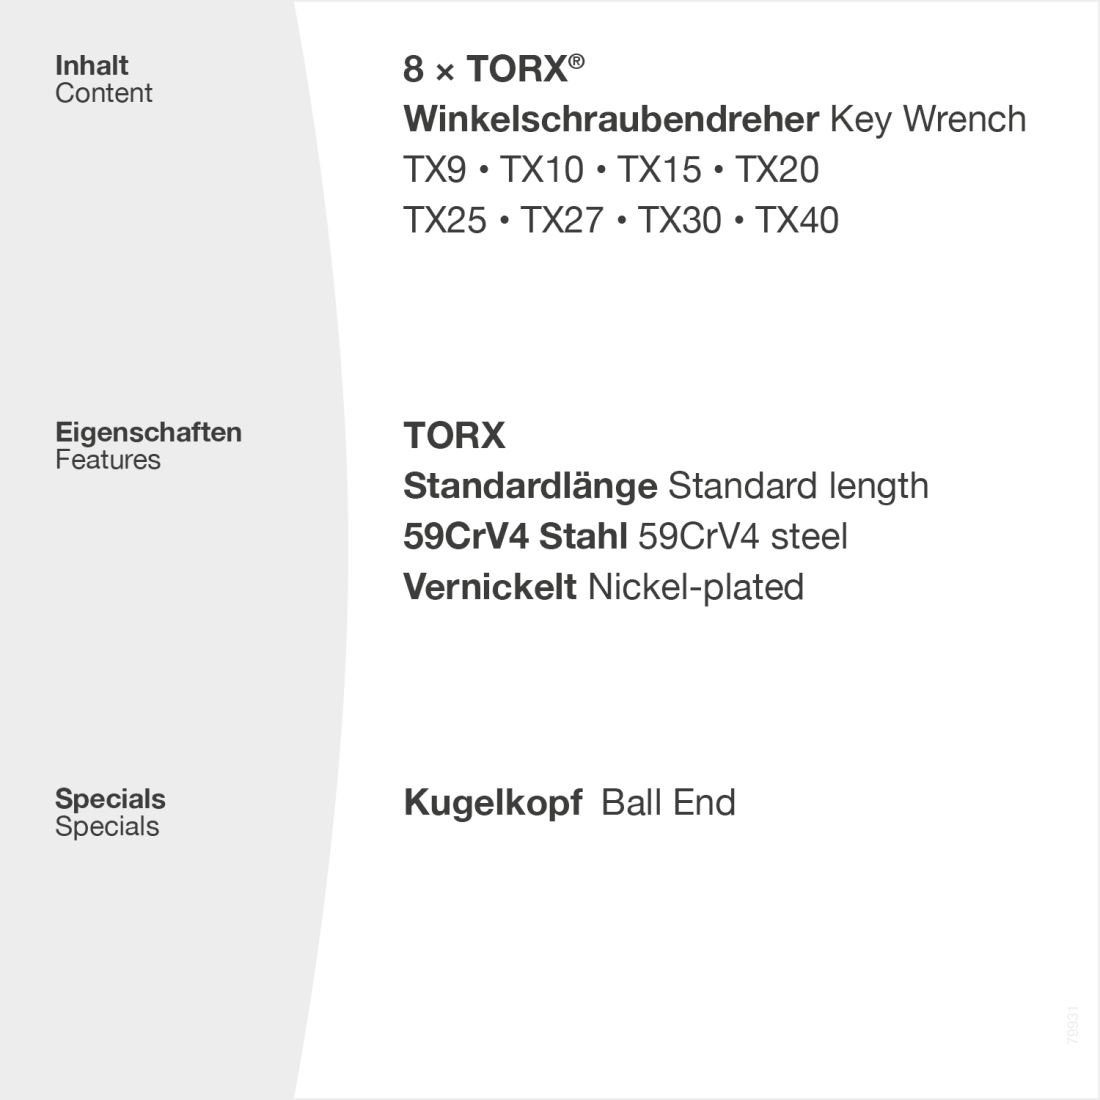 TORX vernickelt mit - Stiftschlüssel TX40, Kugelkopf Winkelschraubendreher TX9 - Set